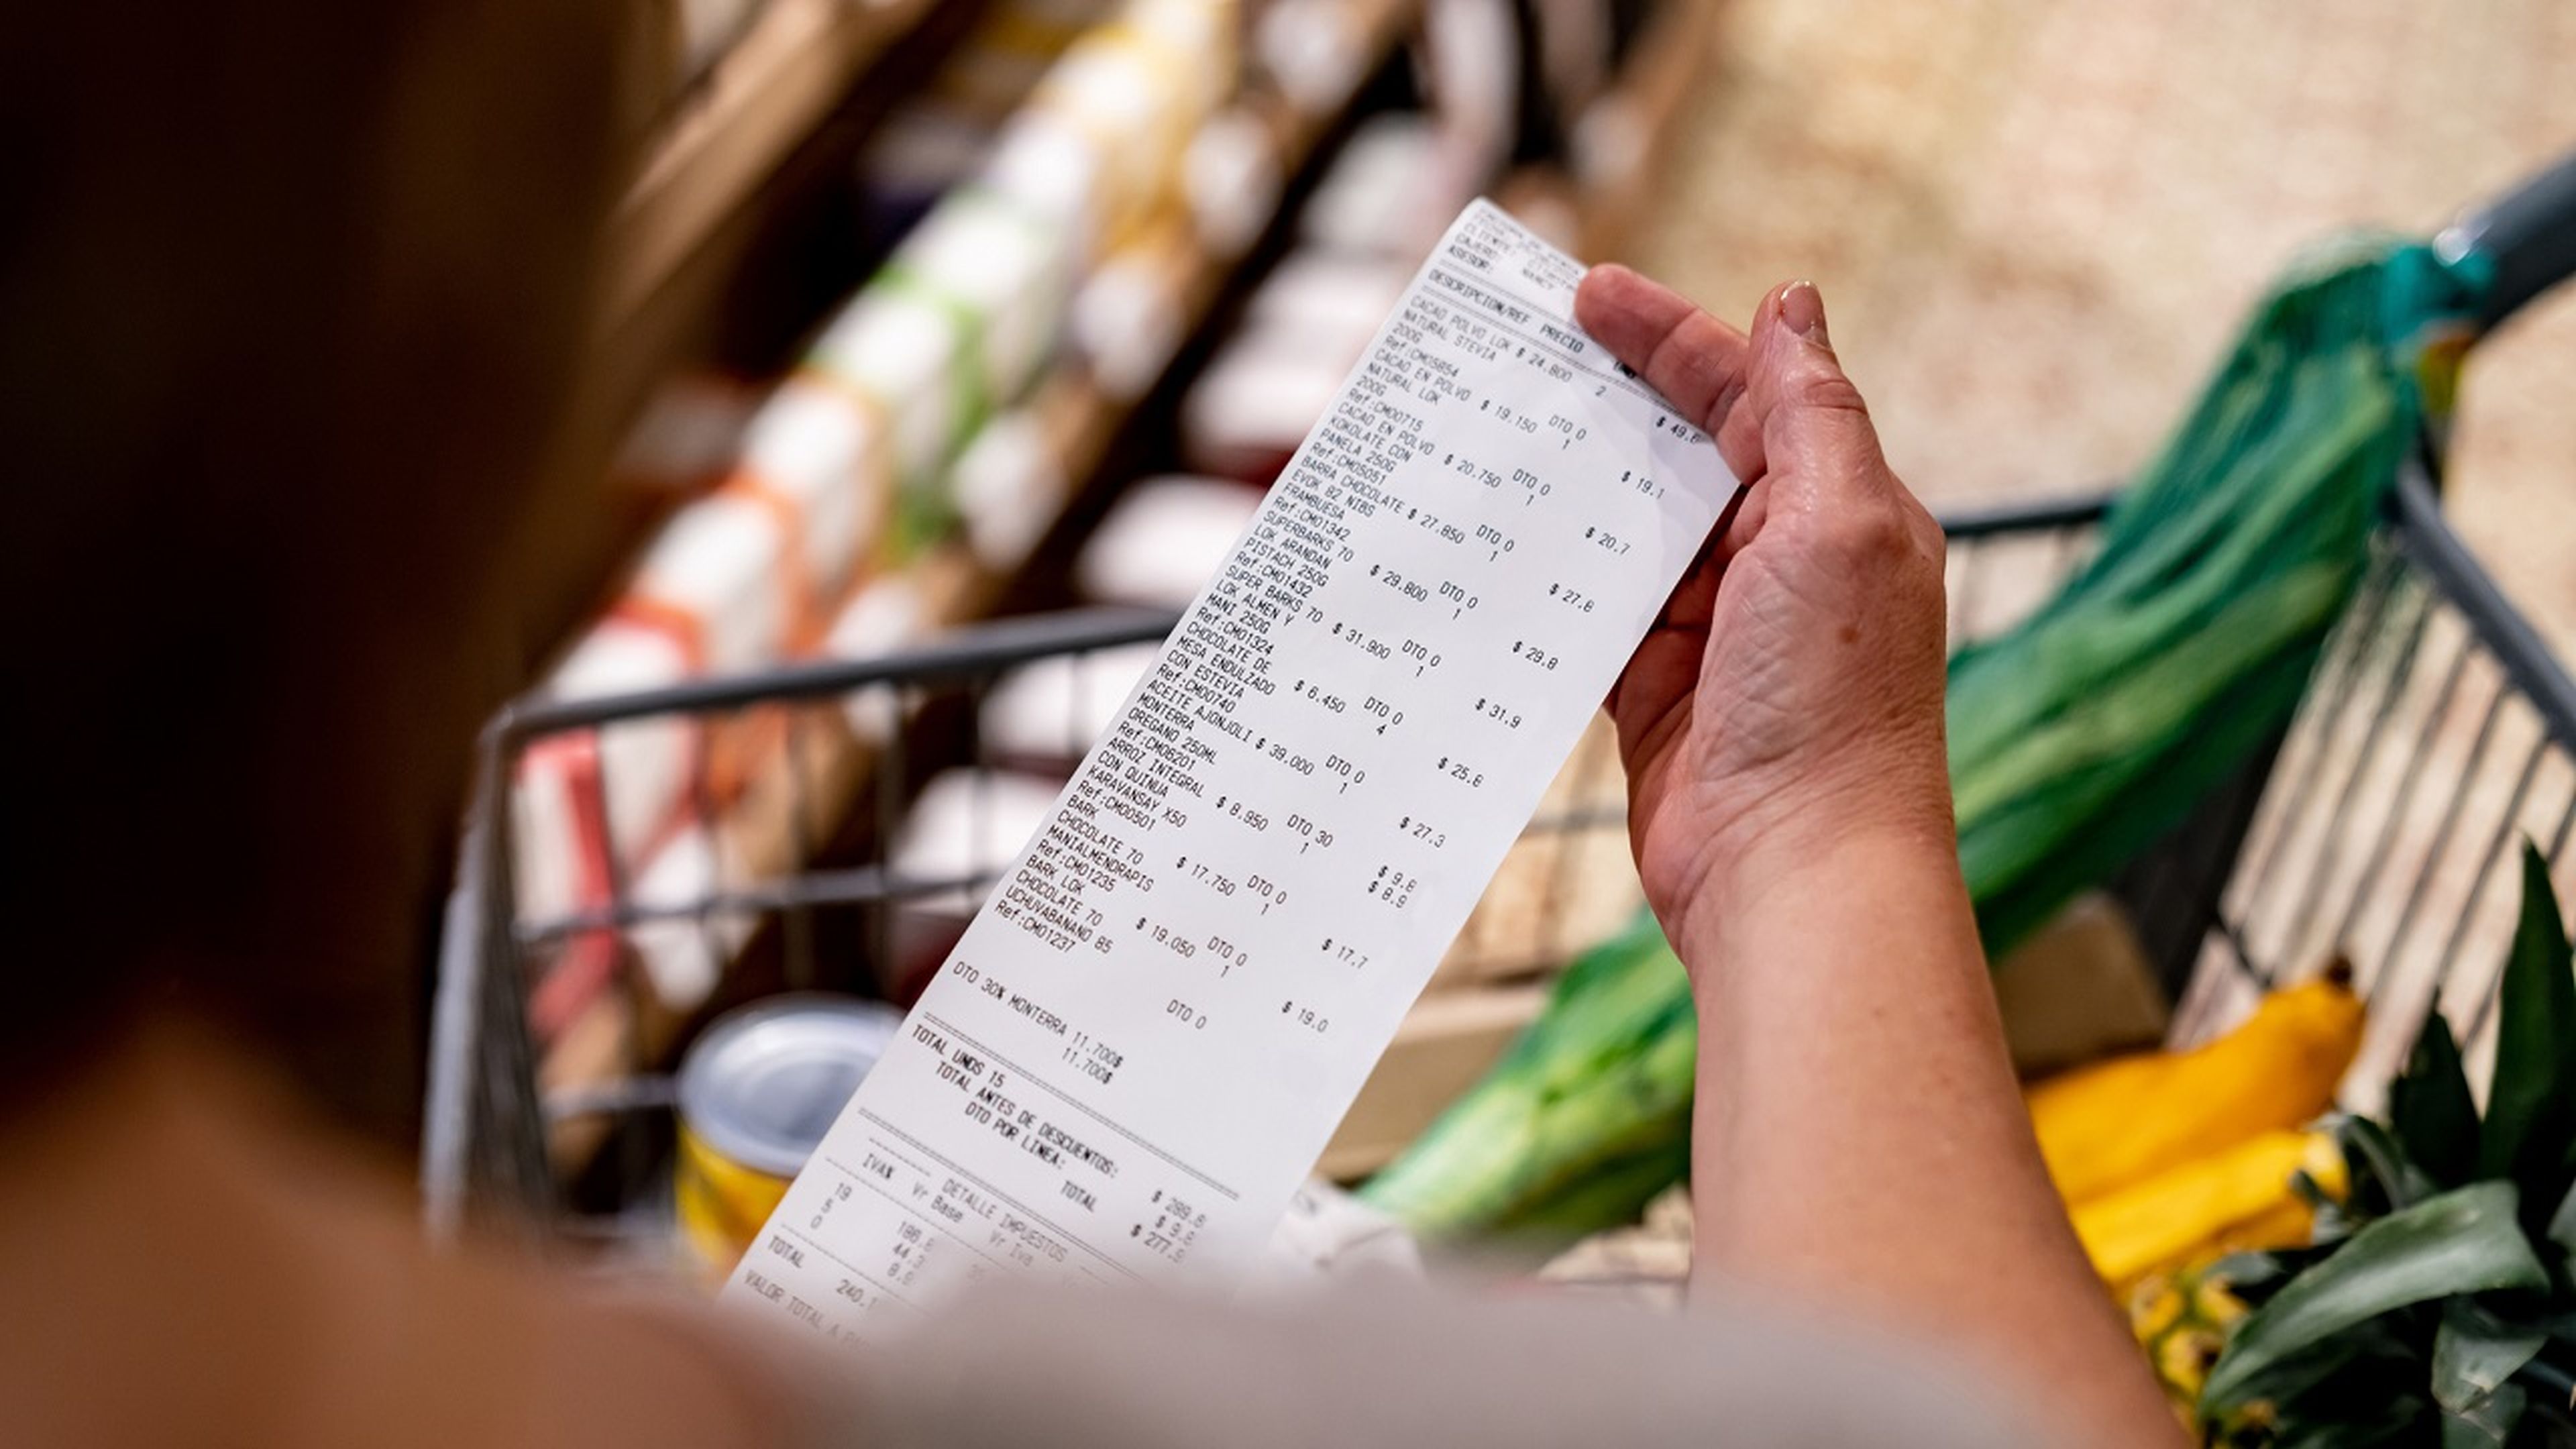 Que no te engañen: 5 aspectos que debes conocer para ahorrar en el supermercado